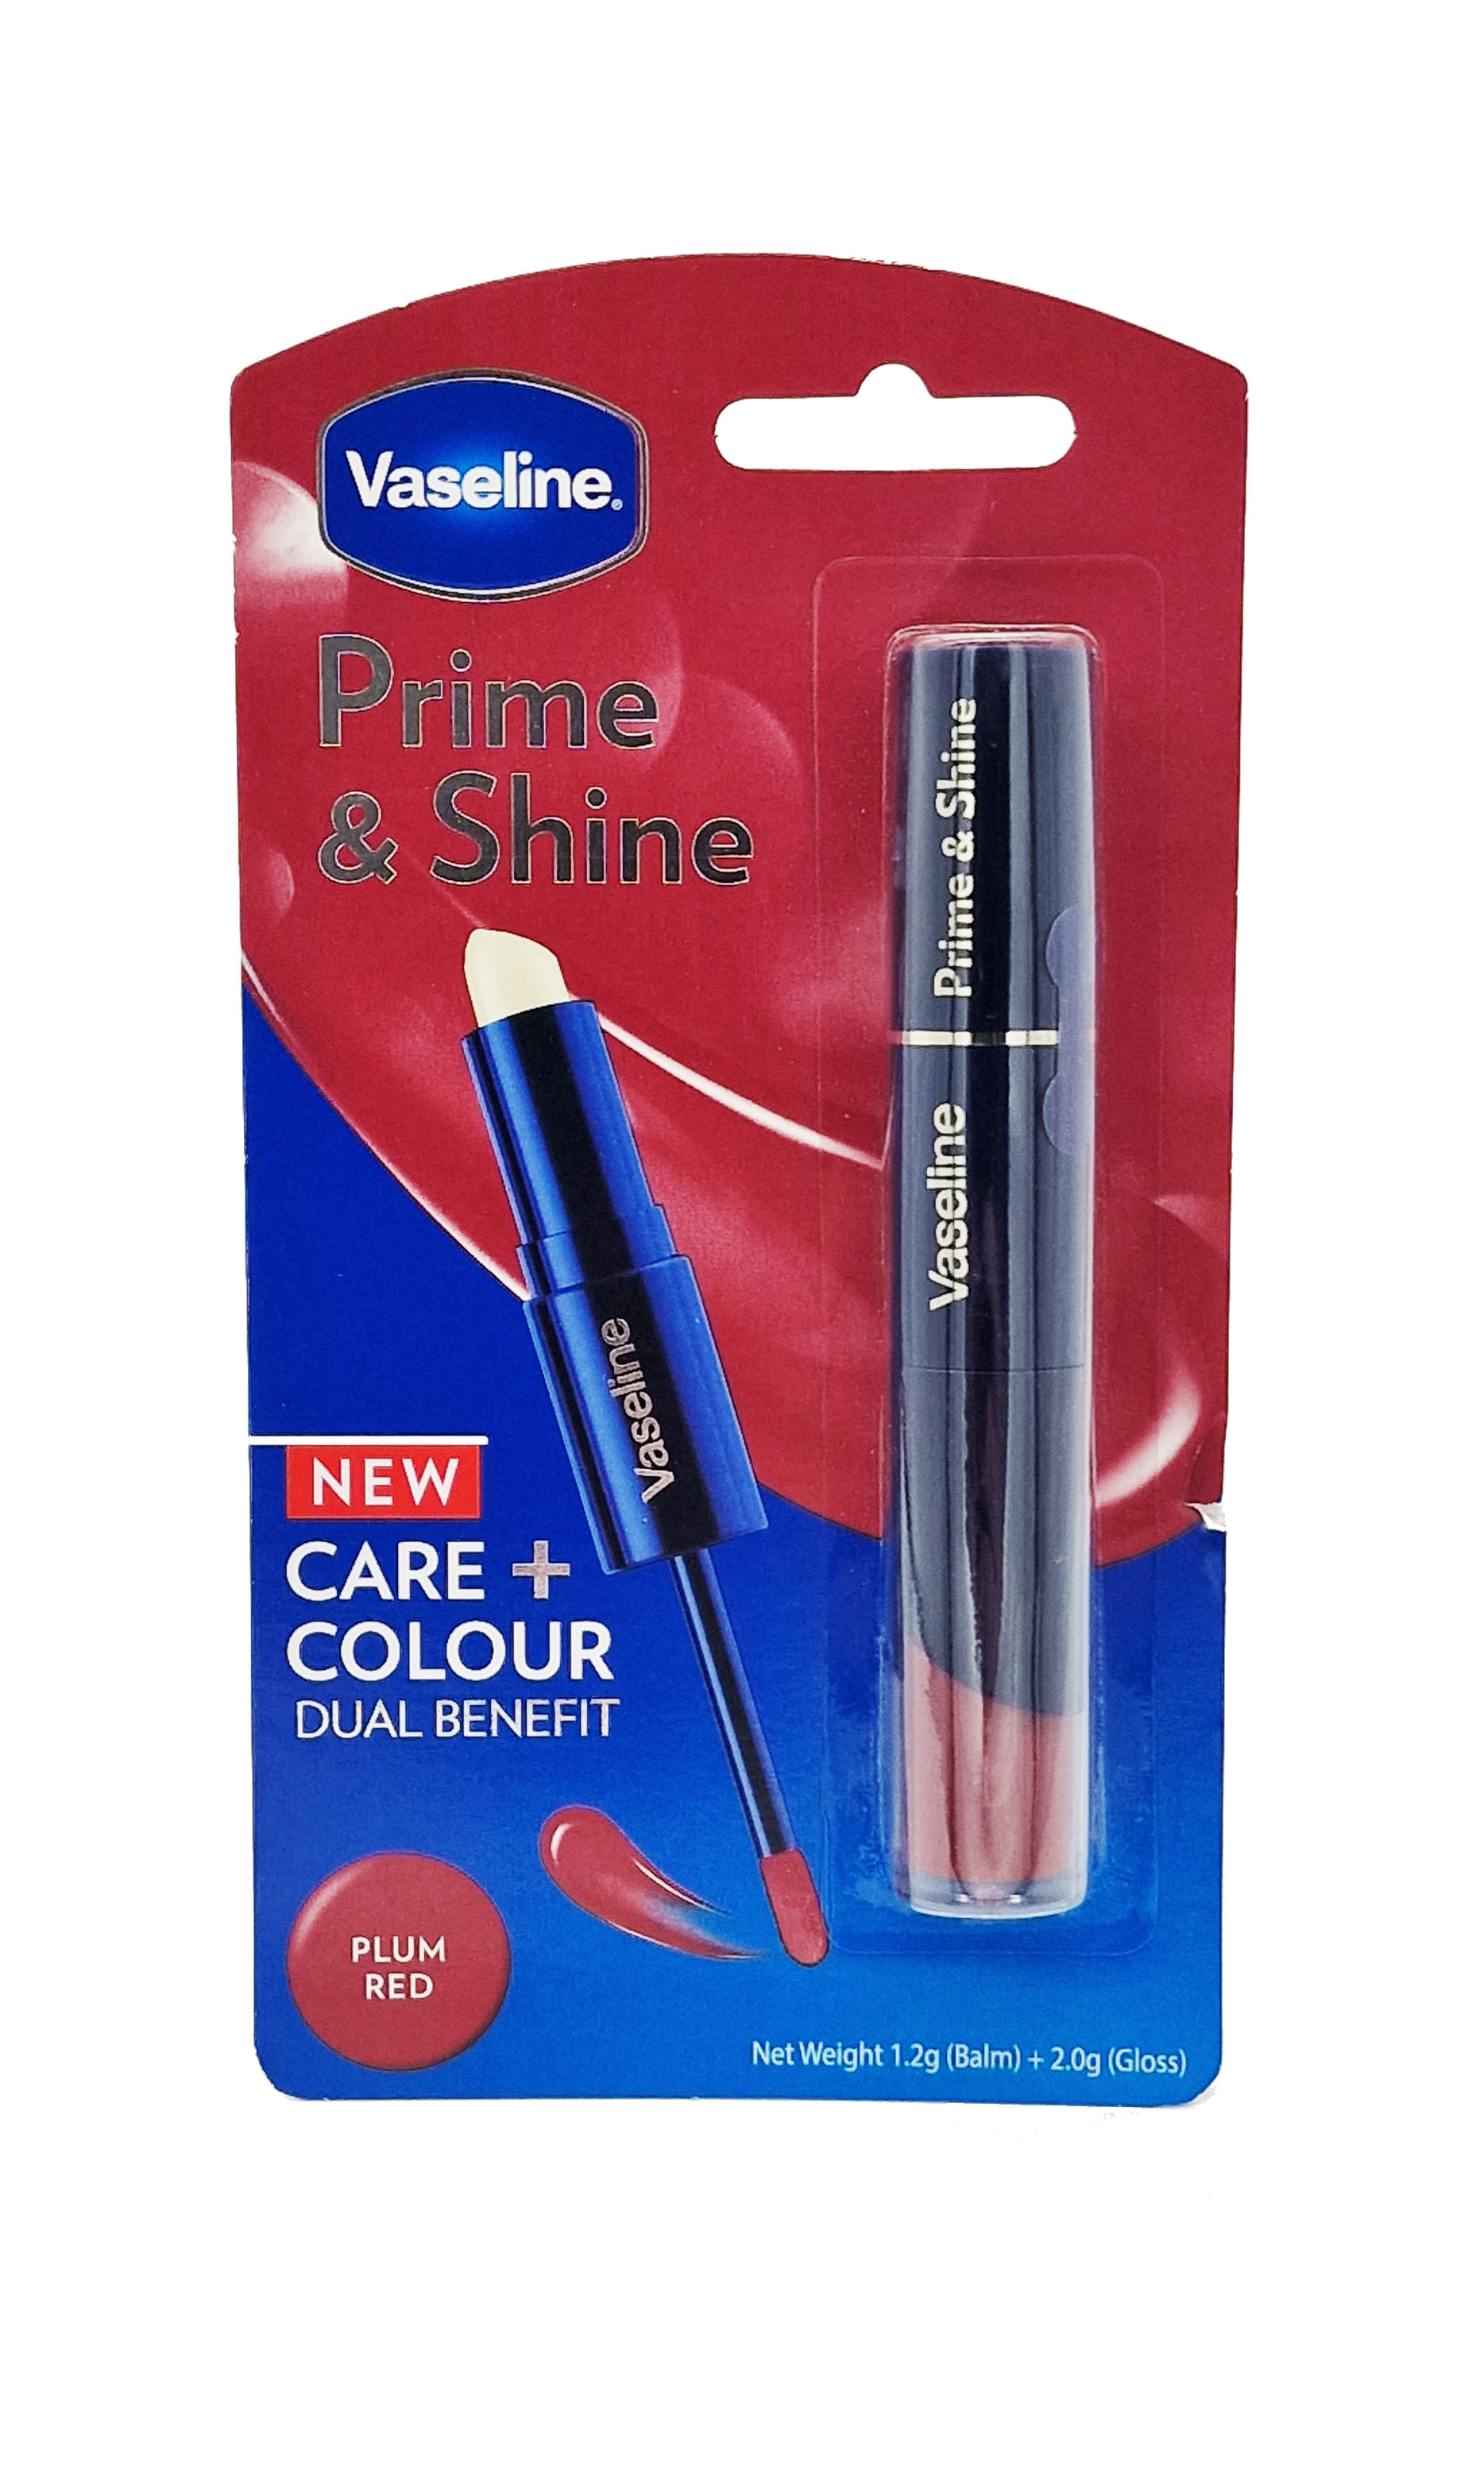 Vaseline Prime & Shine Lippenpflege+Farbe 1,2g Balsam+2,0g Gloss Plum Red